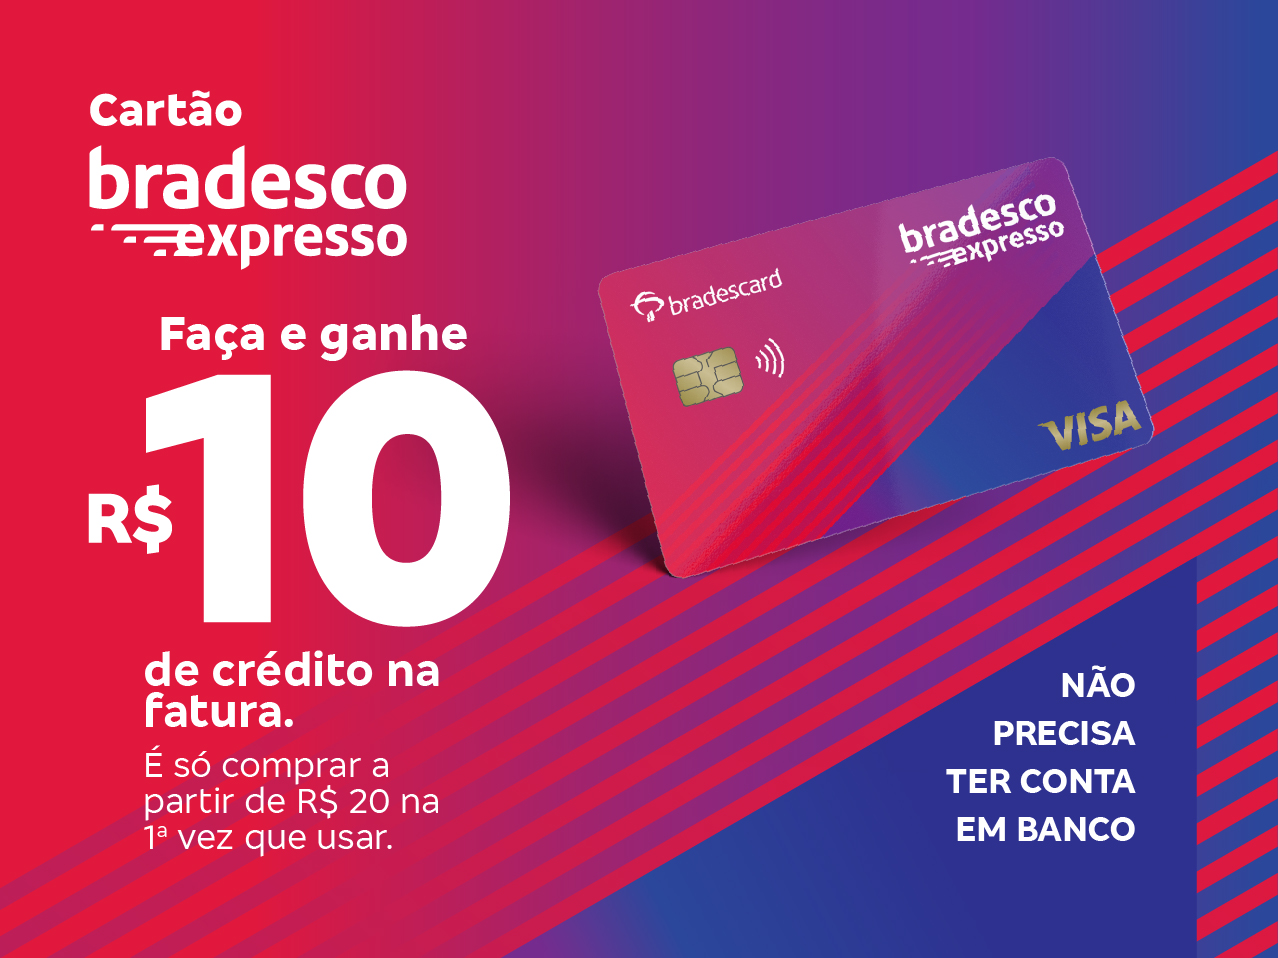 Bradesco Expresso Visa Gold